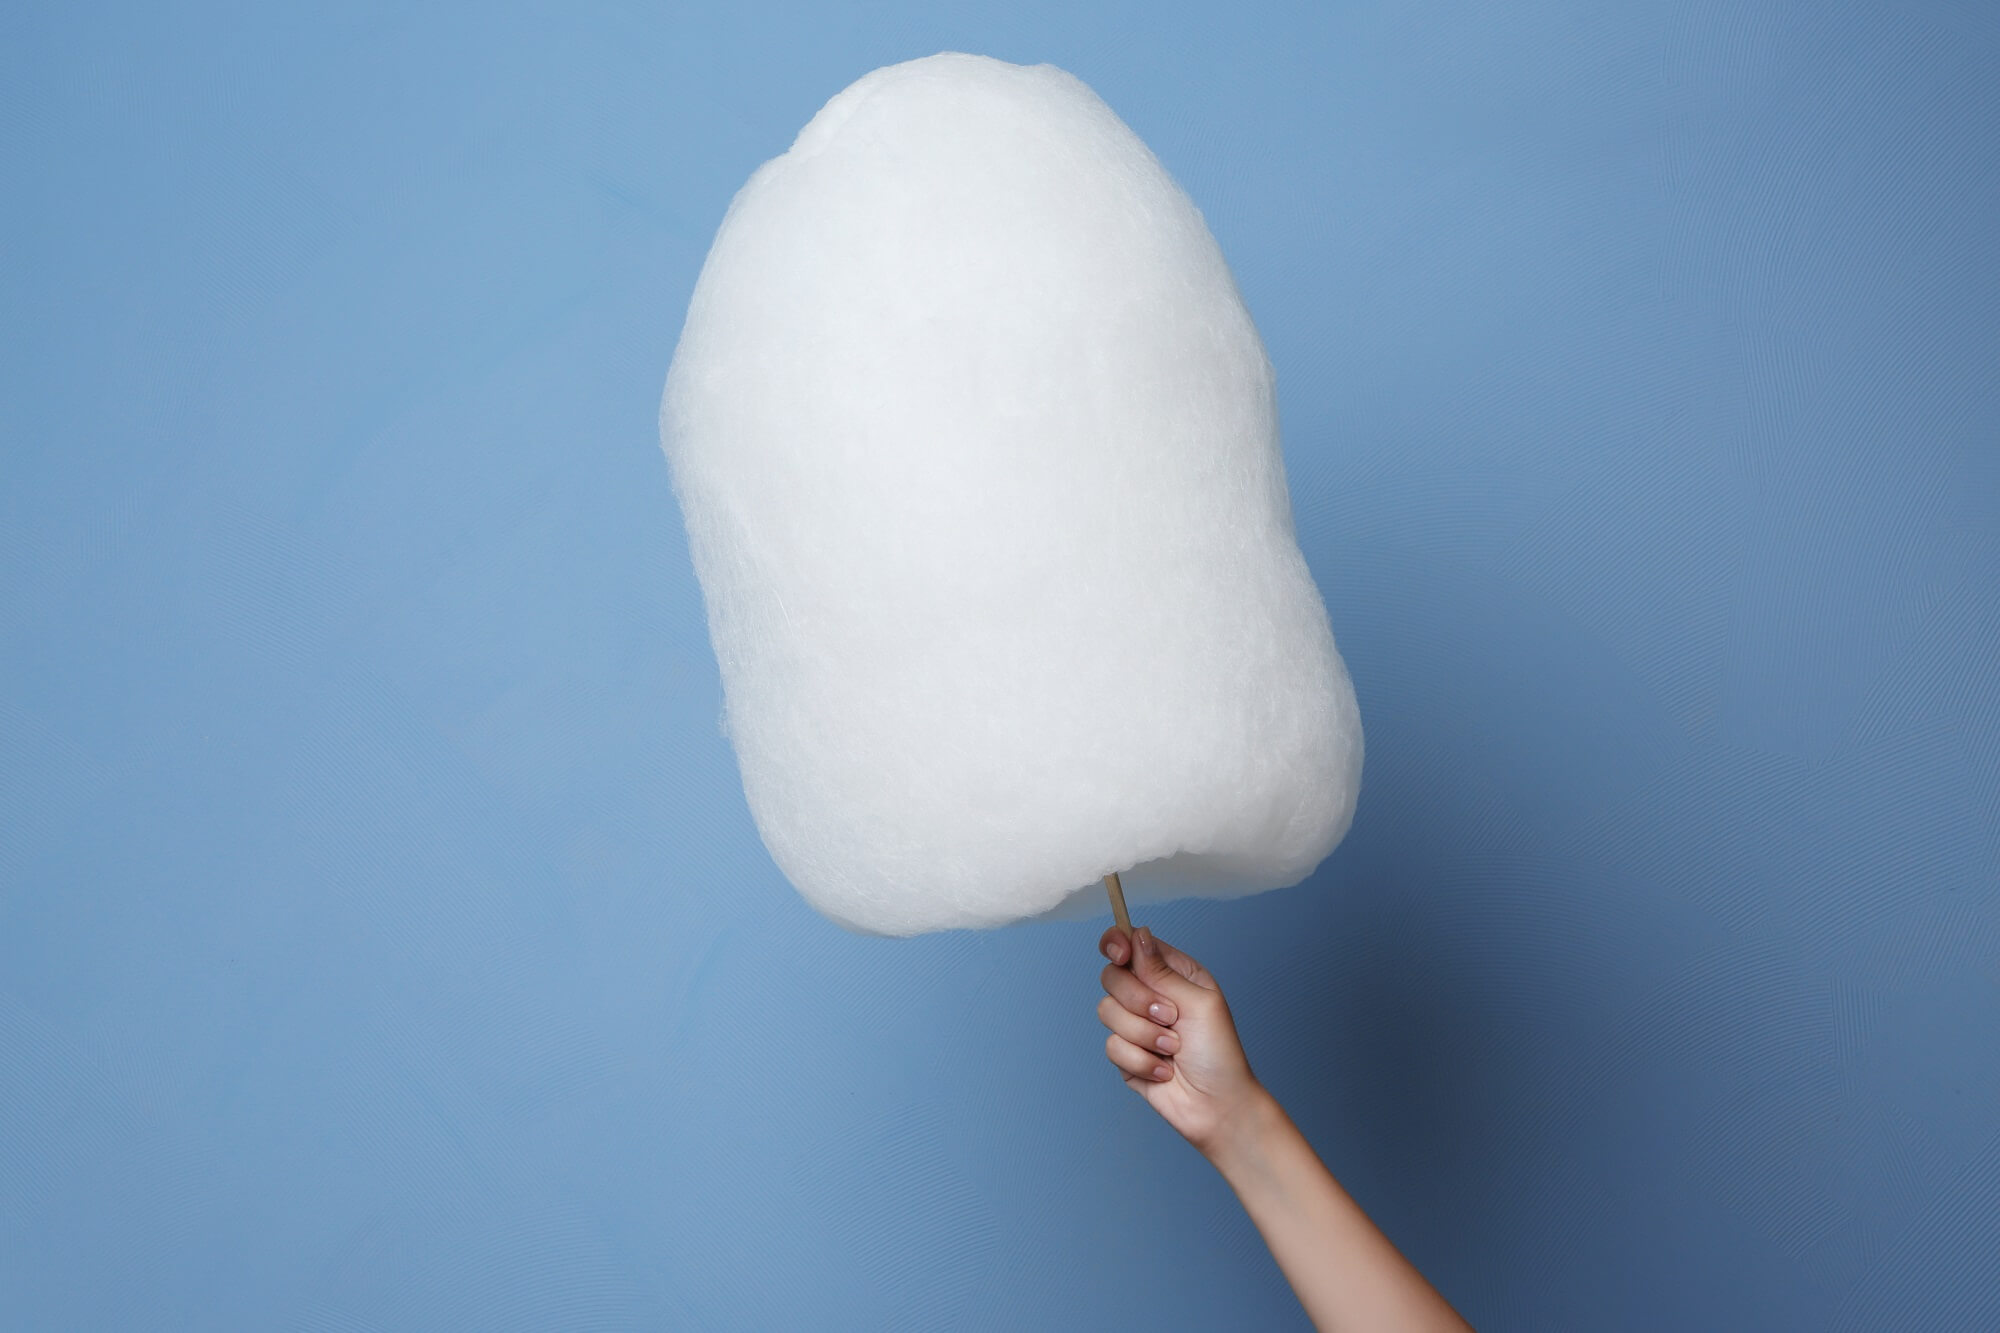 cotton candy macchina per zucchero filato ariete 2973 azzurro